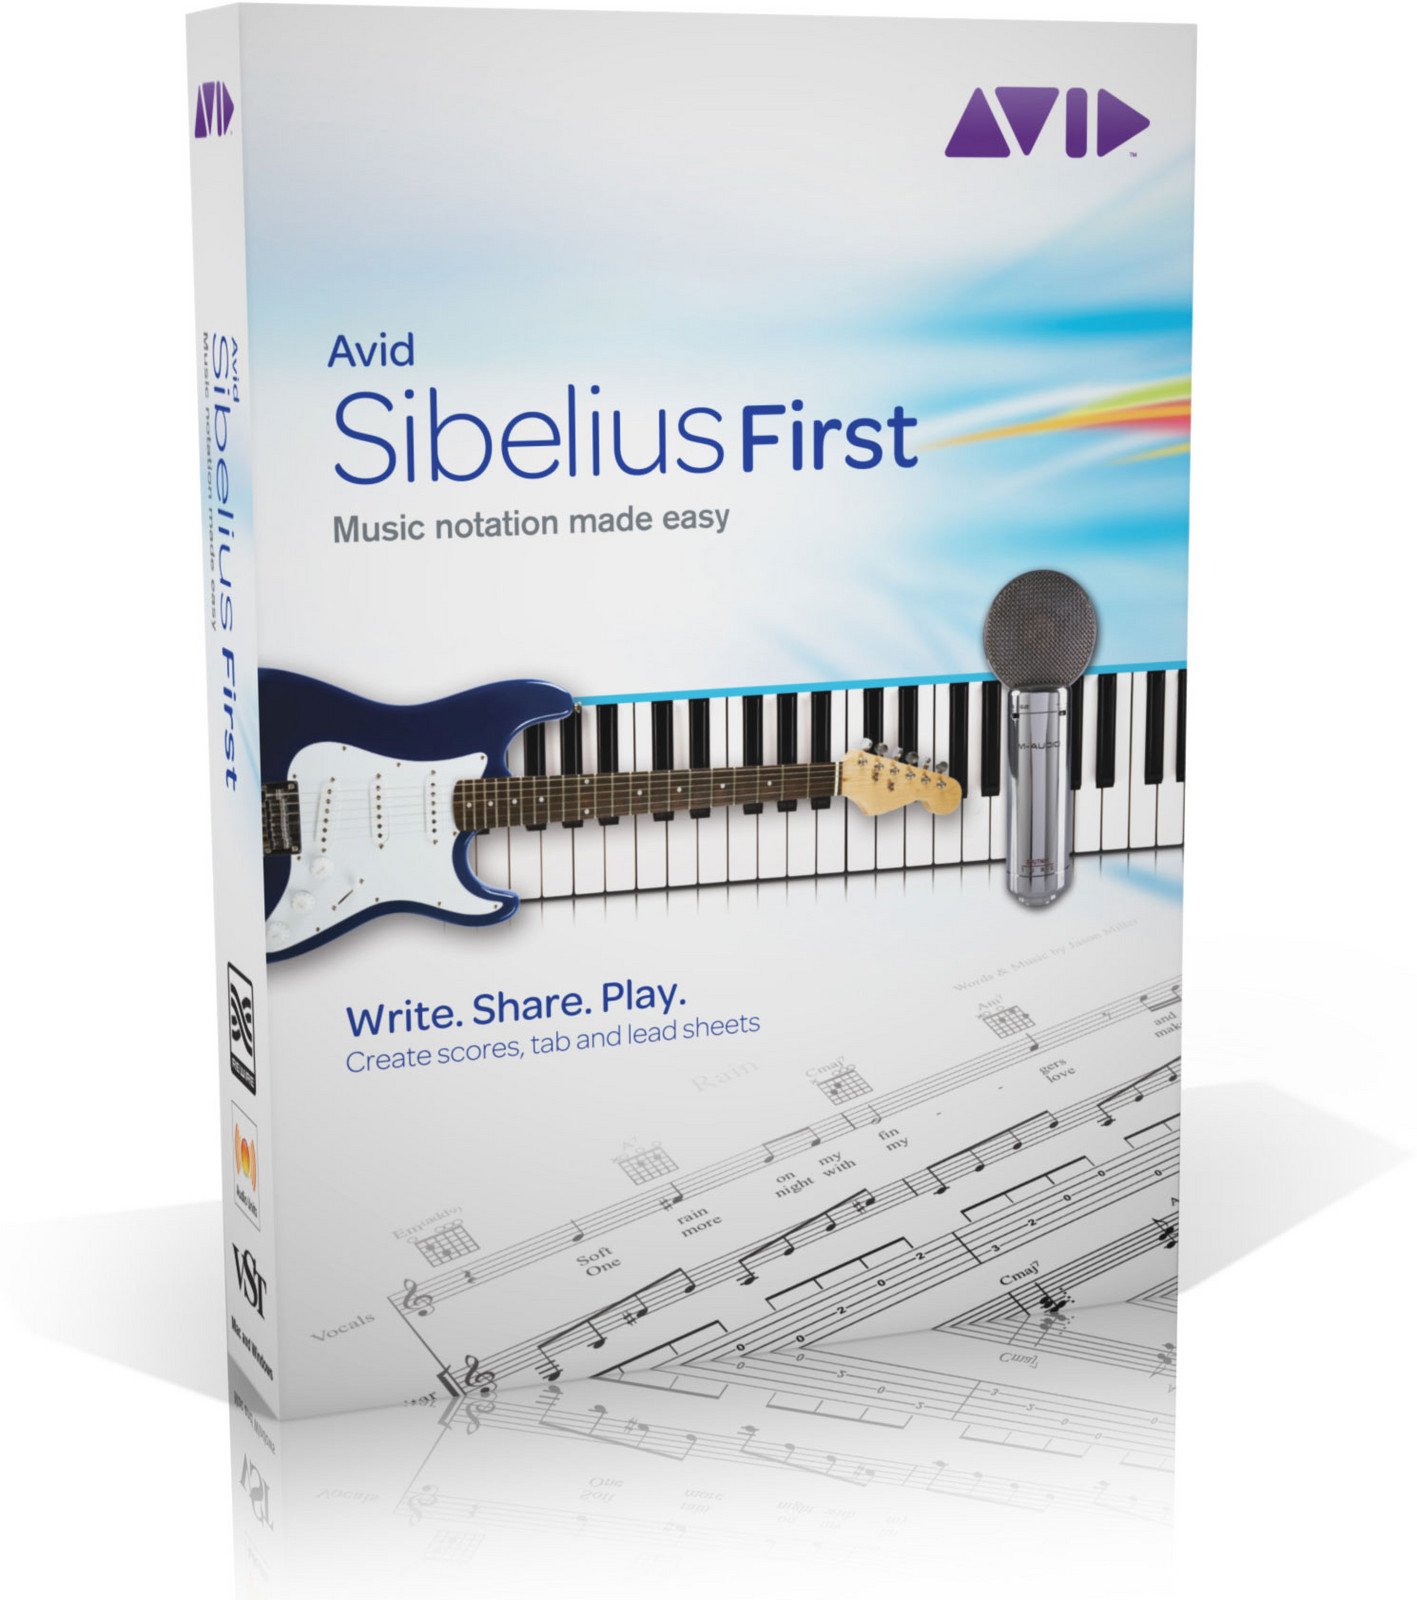 sibelius 6 free download mac